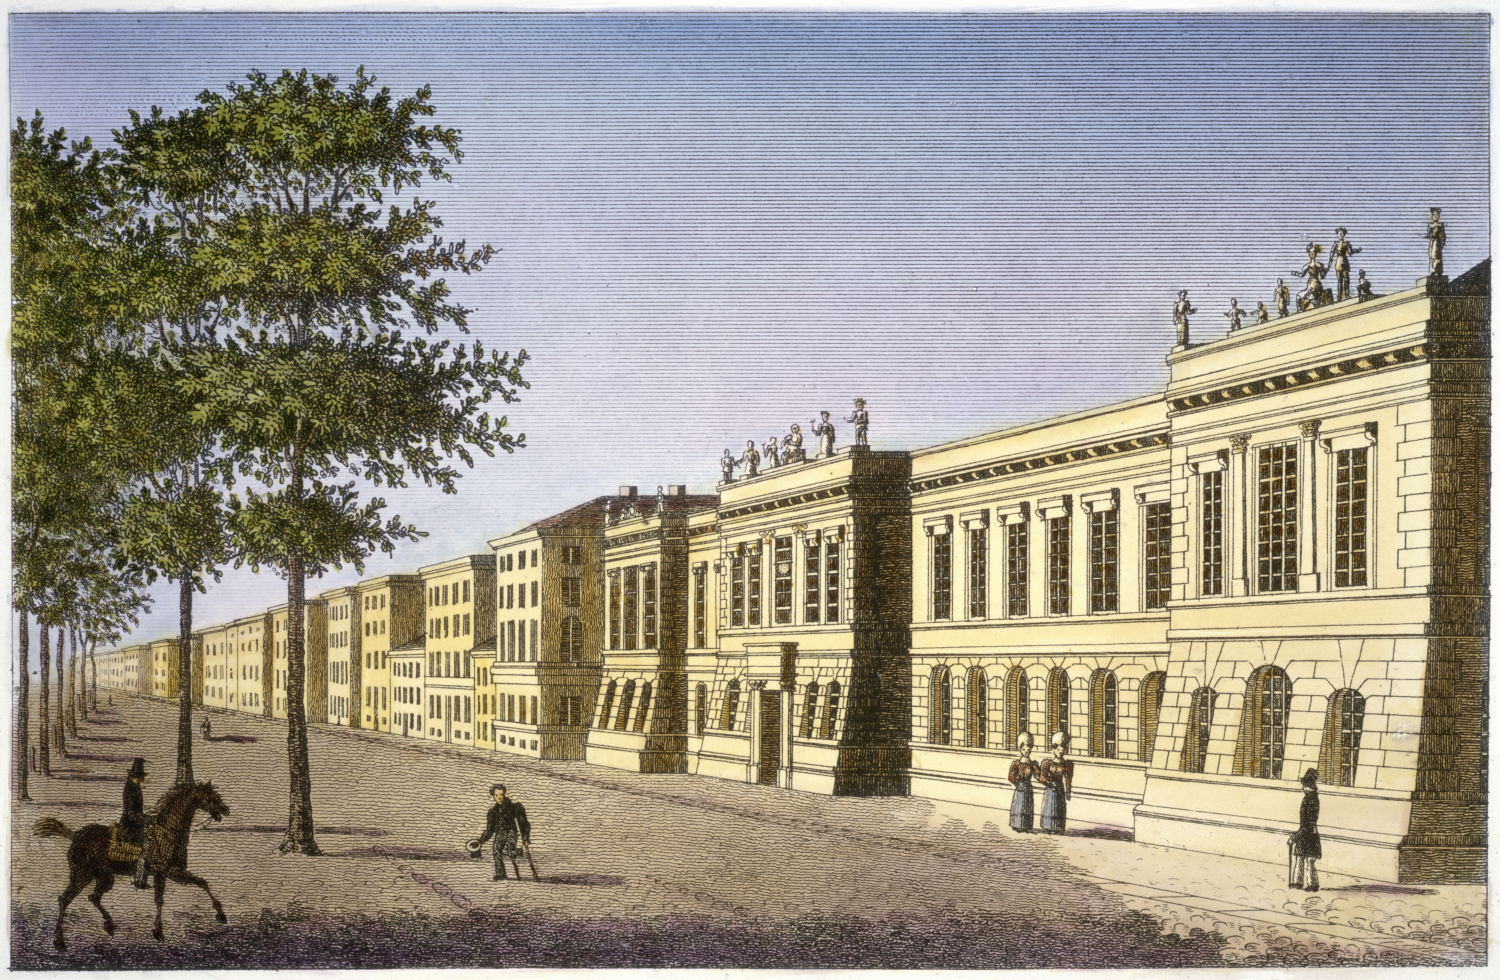 Die königliche Akademie der Künste und Wissenschaften Unter den Linden. Radierung. Um 1820. ©bpk / Dietmar Katz